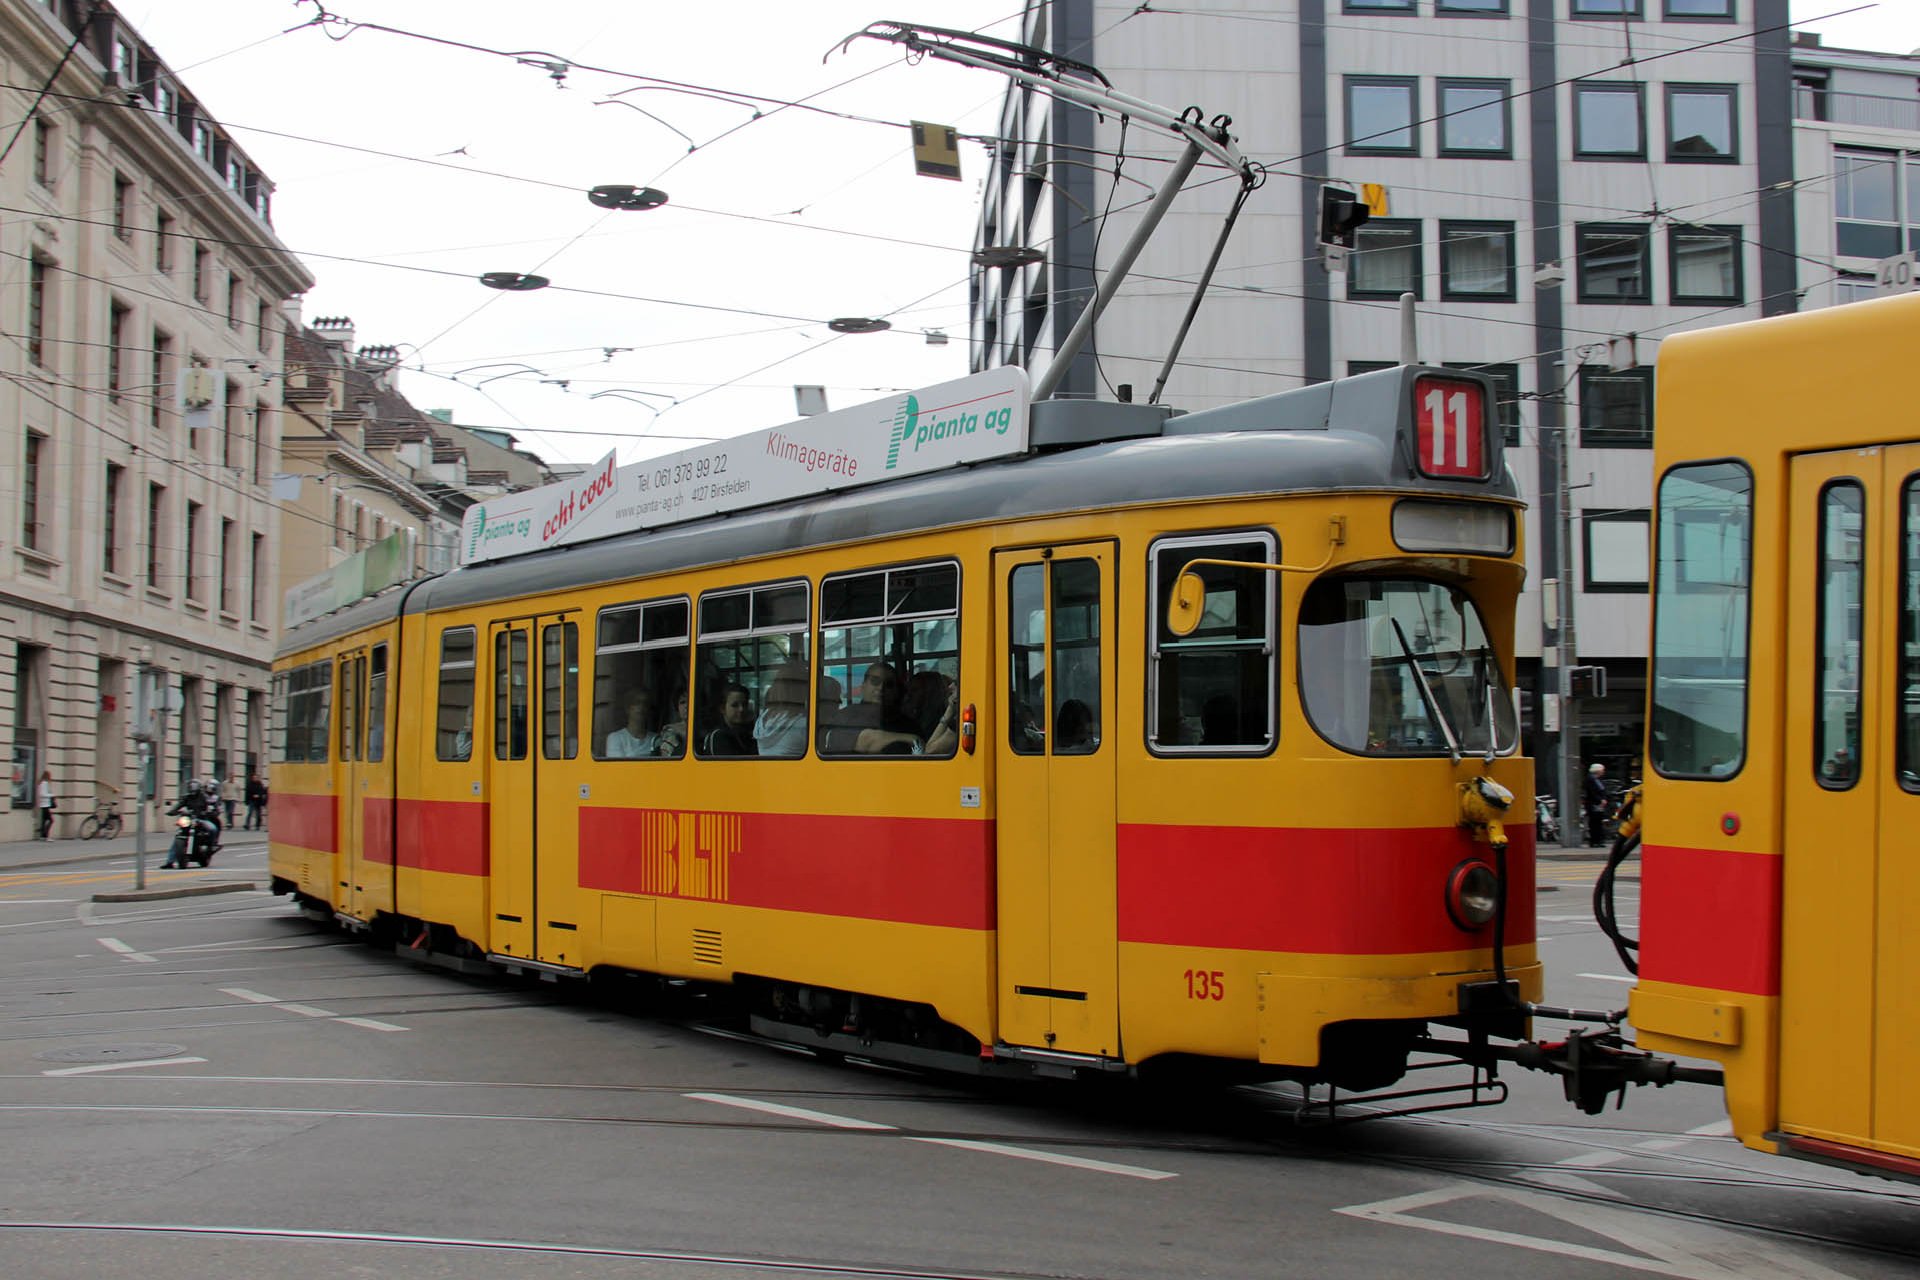 8548_24 Hier ein Bild des BLT Be 4/6 in Basel vom Juni 2011, diese Straßenbahn ist seit 2012 in Belgrad. Here a pic of a BLT Be 4/6 from June 2011, this tram is in Belgrade since 2012.